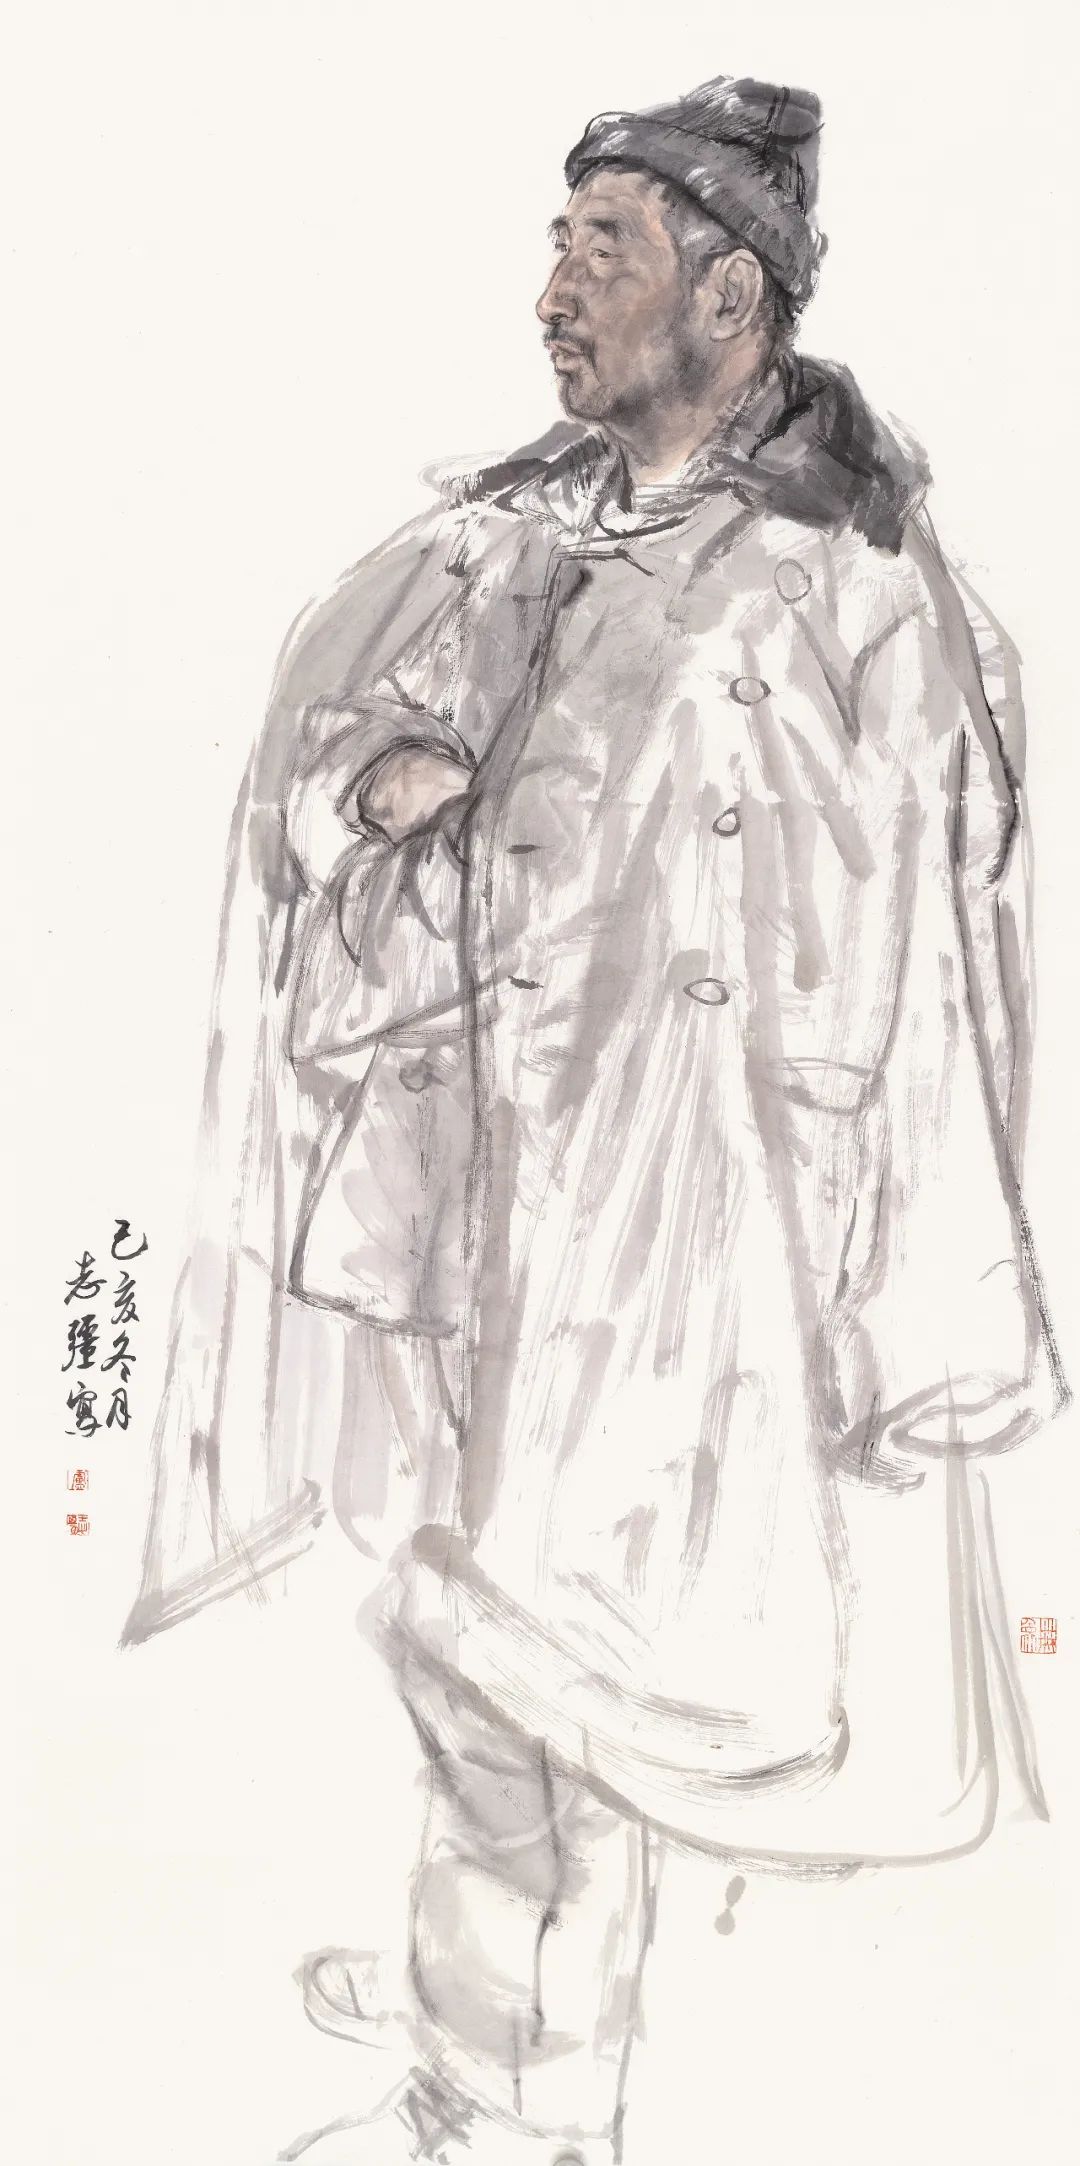 高峰之路——新时代中国画优秀成果展（2012—2022）福州站将于12月21日开幕